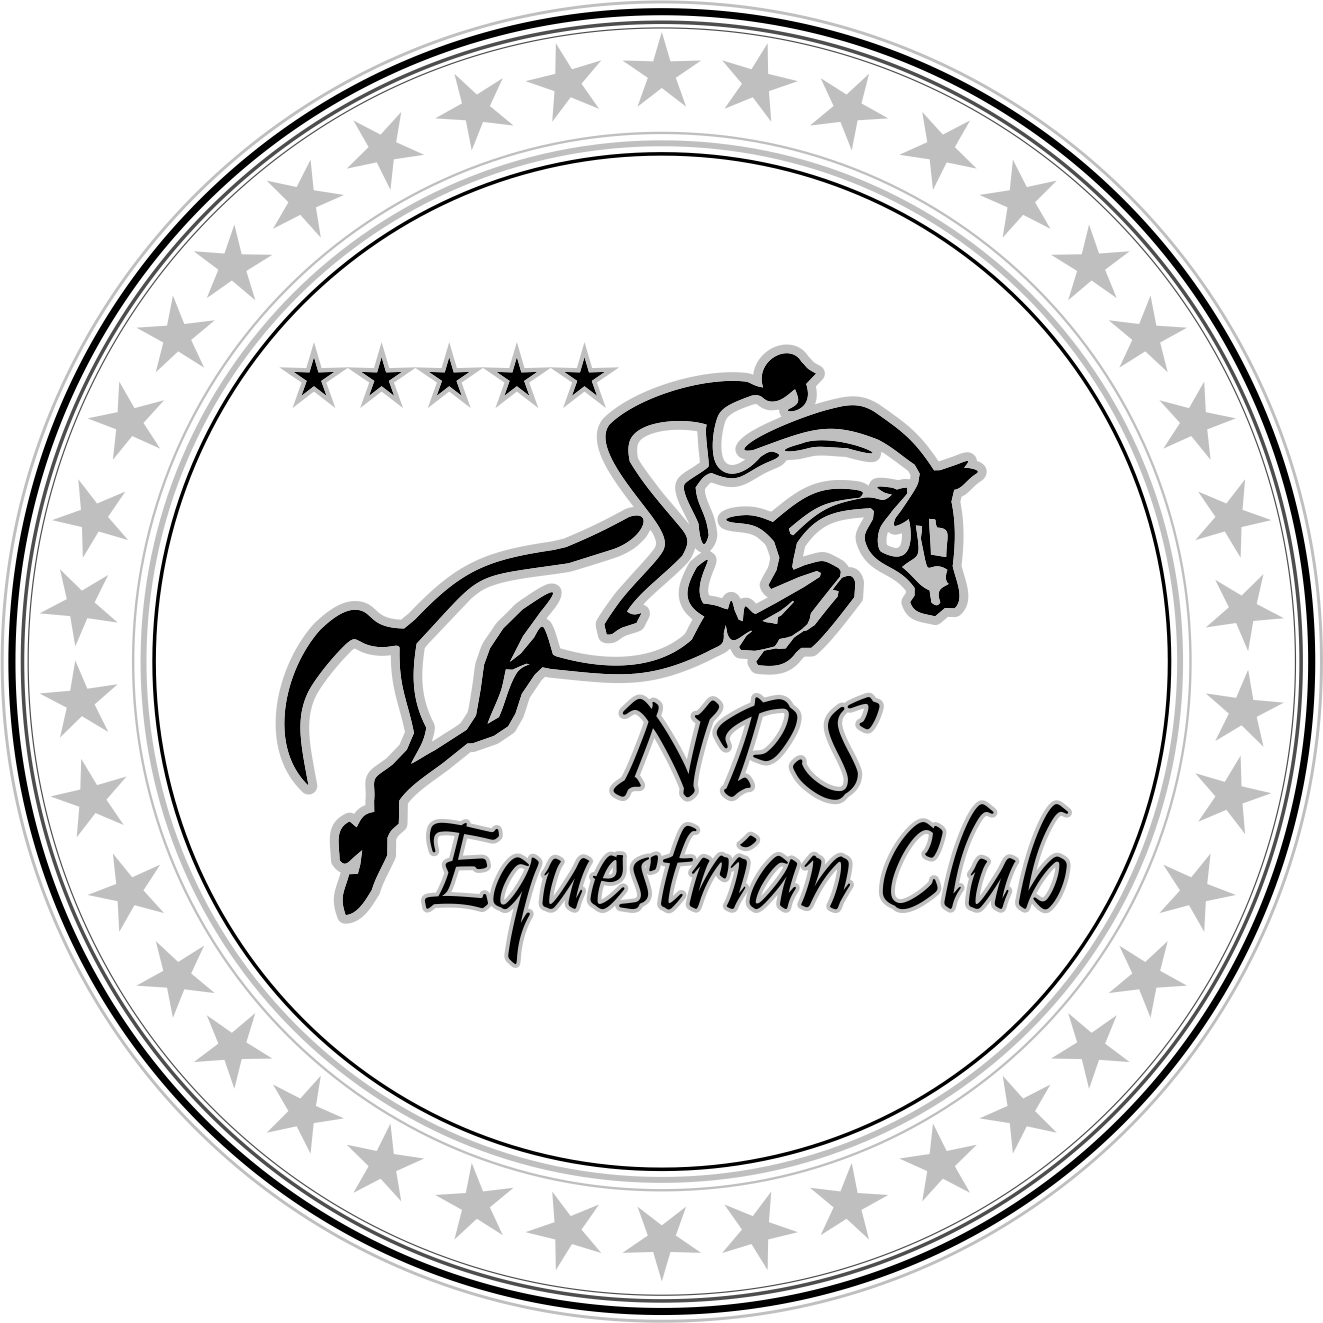 NPS Equestrian Club